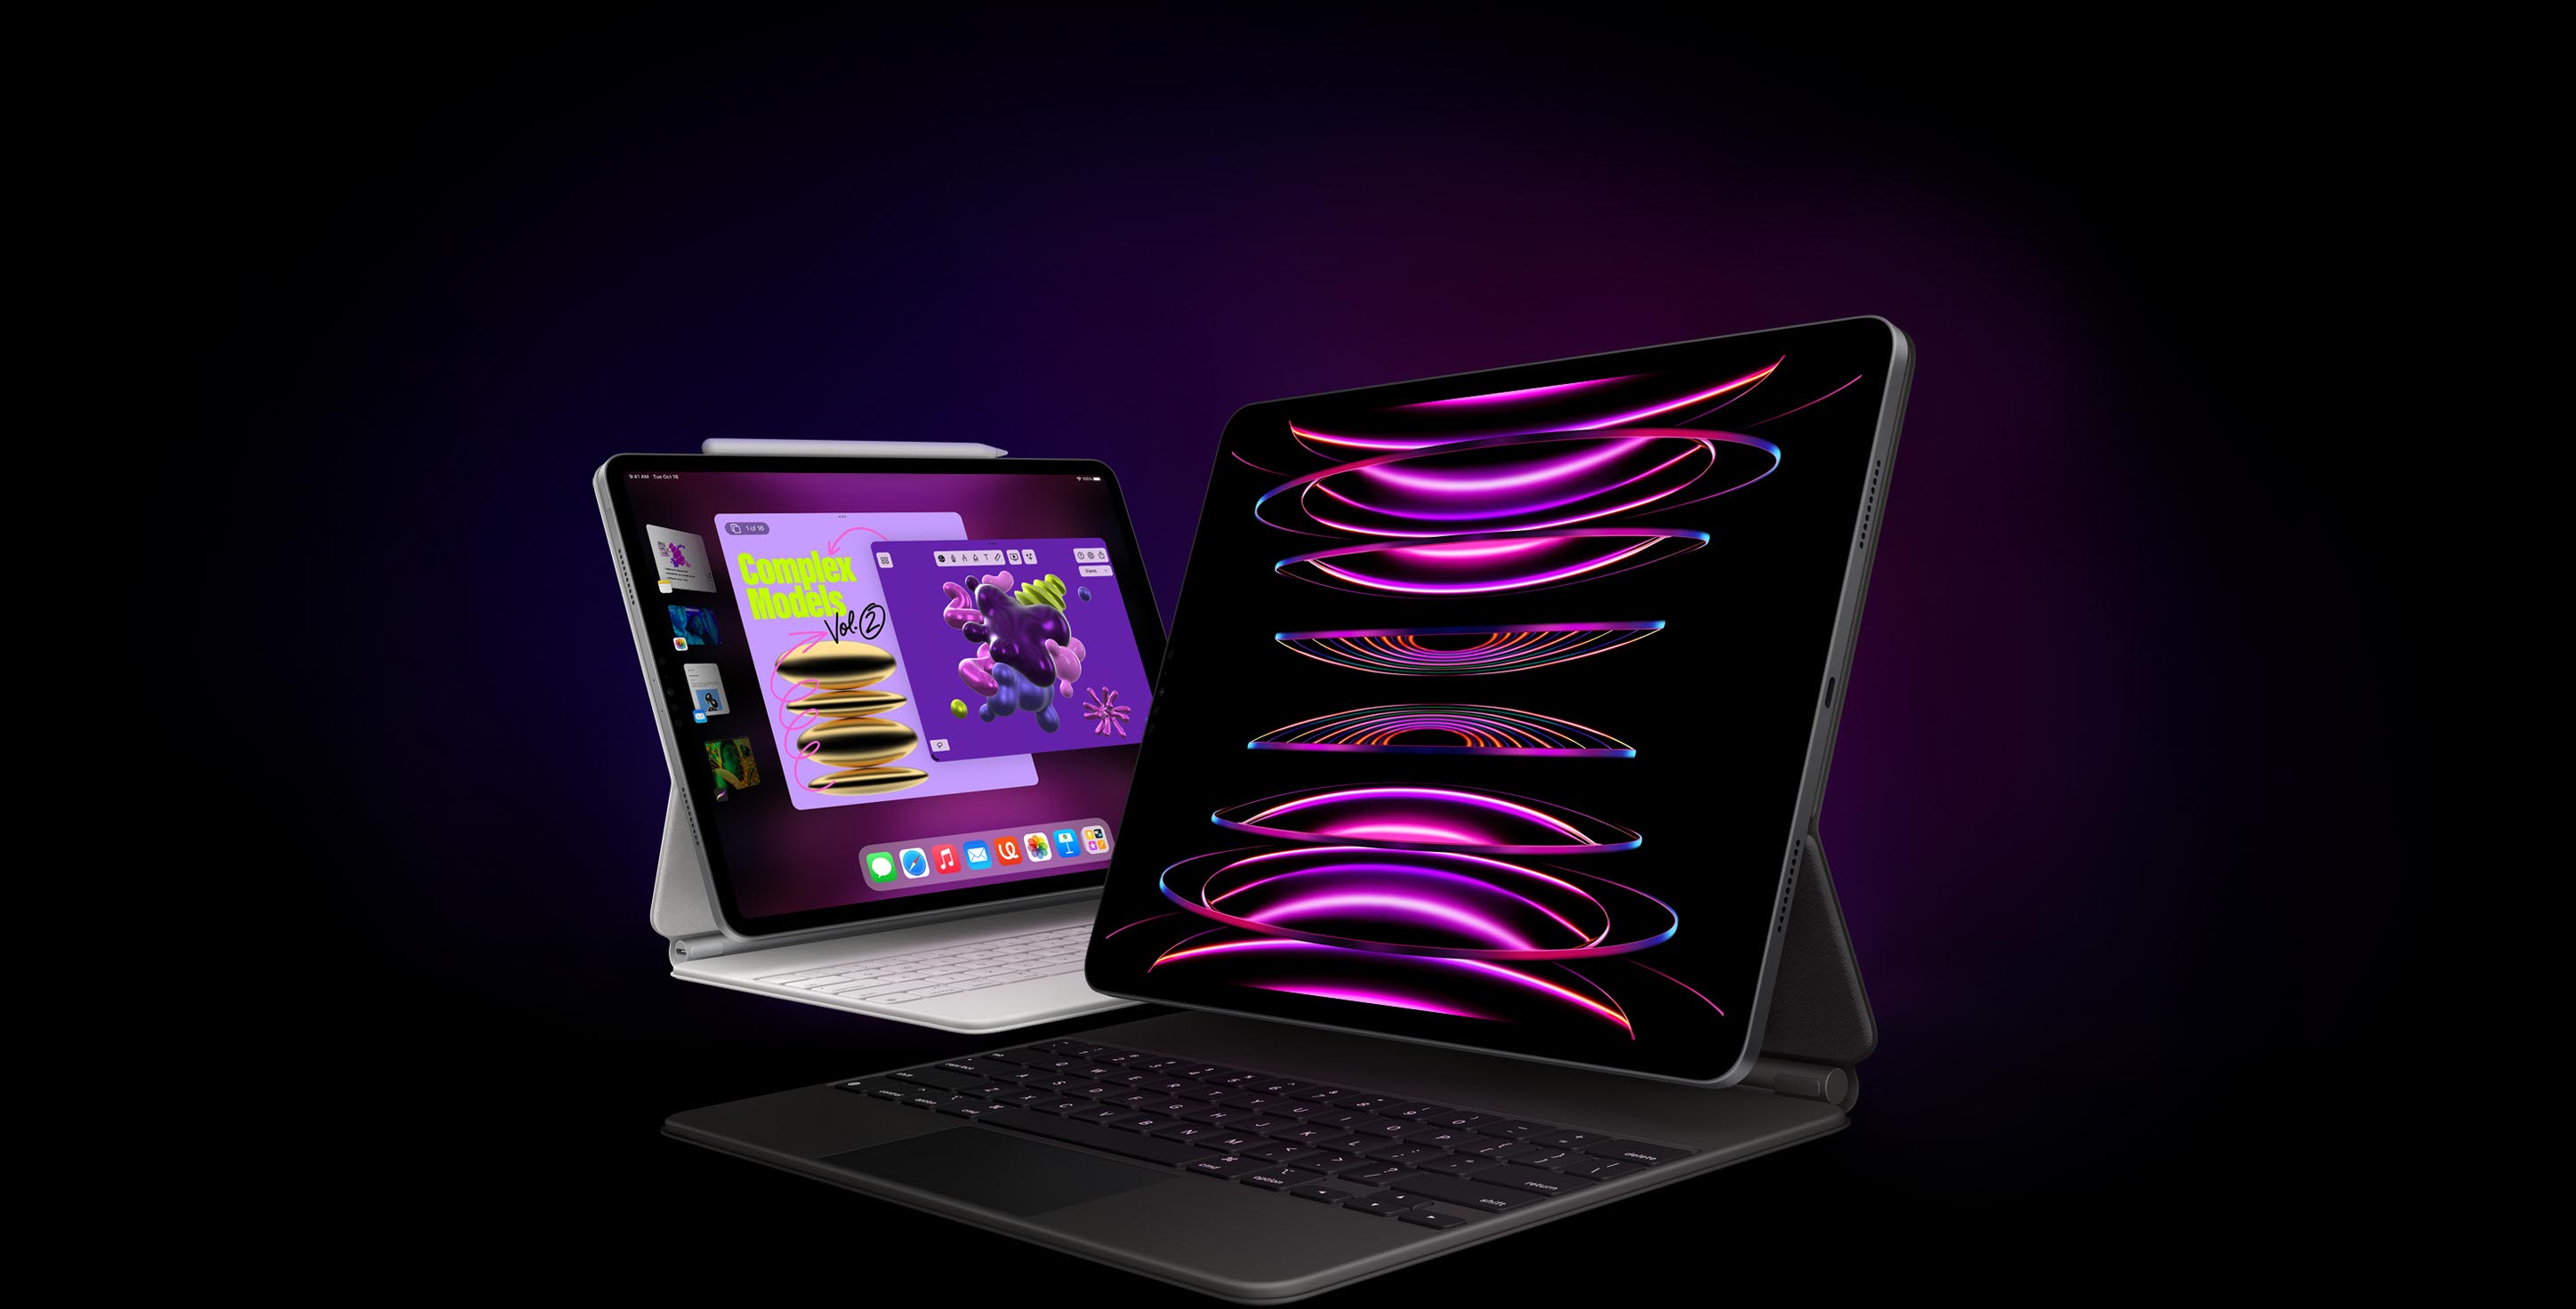 A háttérben egy iPad Pro fehér Magic Keyboarddal és Apple Pencillel, a kijelzőn a Porondmester funkció látszik. Előtte egy másik iPad Pro fekete Magic Keyboarddal, a kijelzőjén egy háttérképpel.